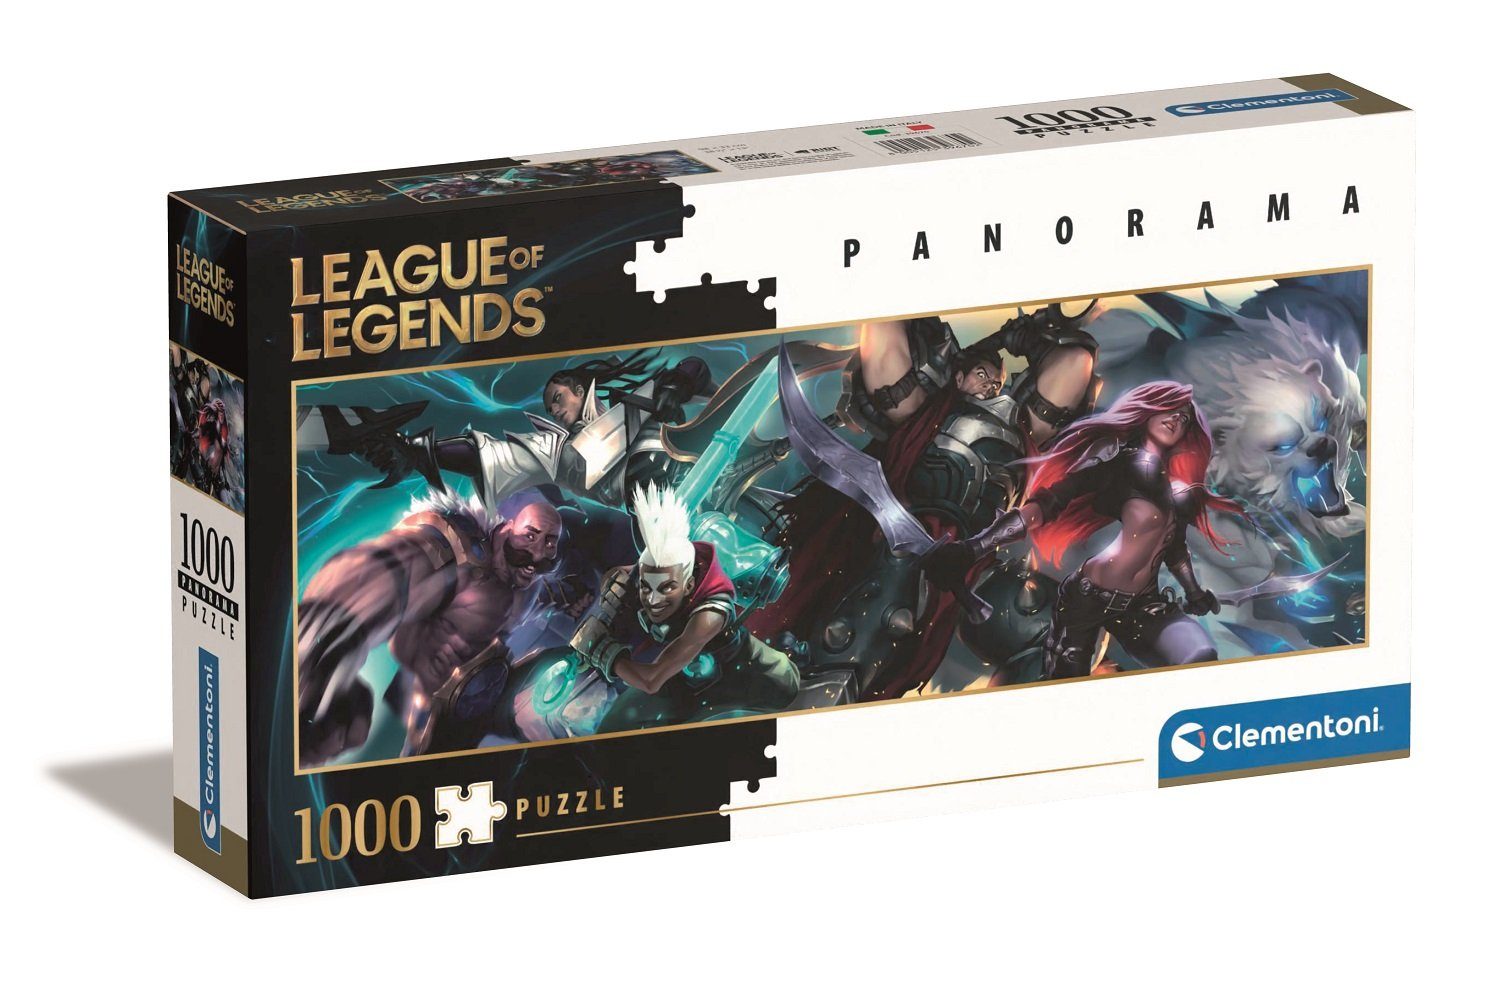 Clementoni® Puzzle League of Legends Panorama Puzzle, 1000 Puzzleteile